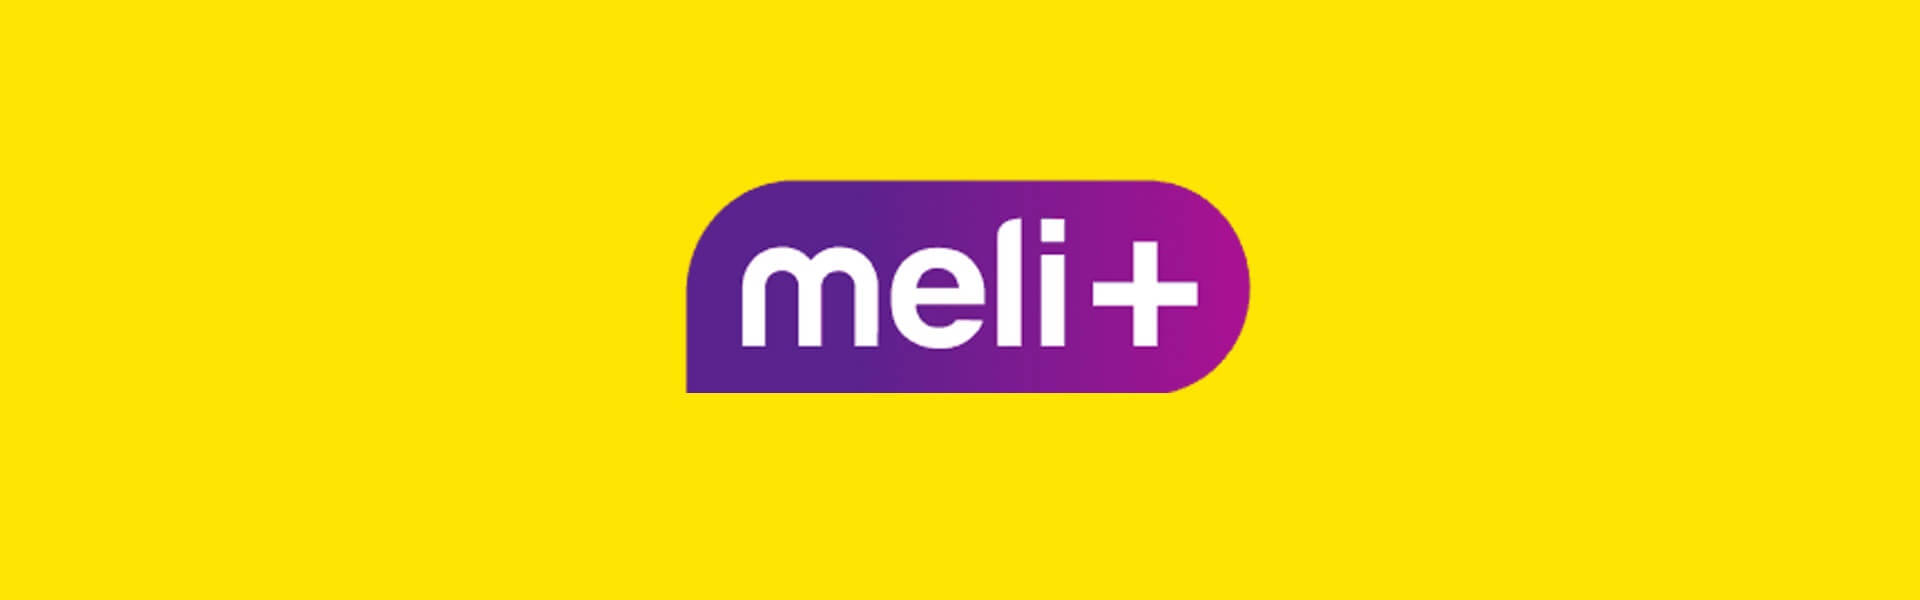 Meli+: ¿qué es y cómo funciona la suscripción de Mercado Libre?